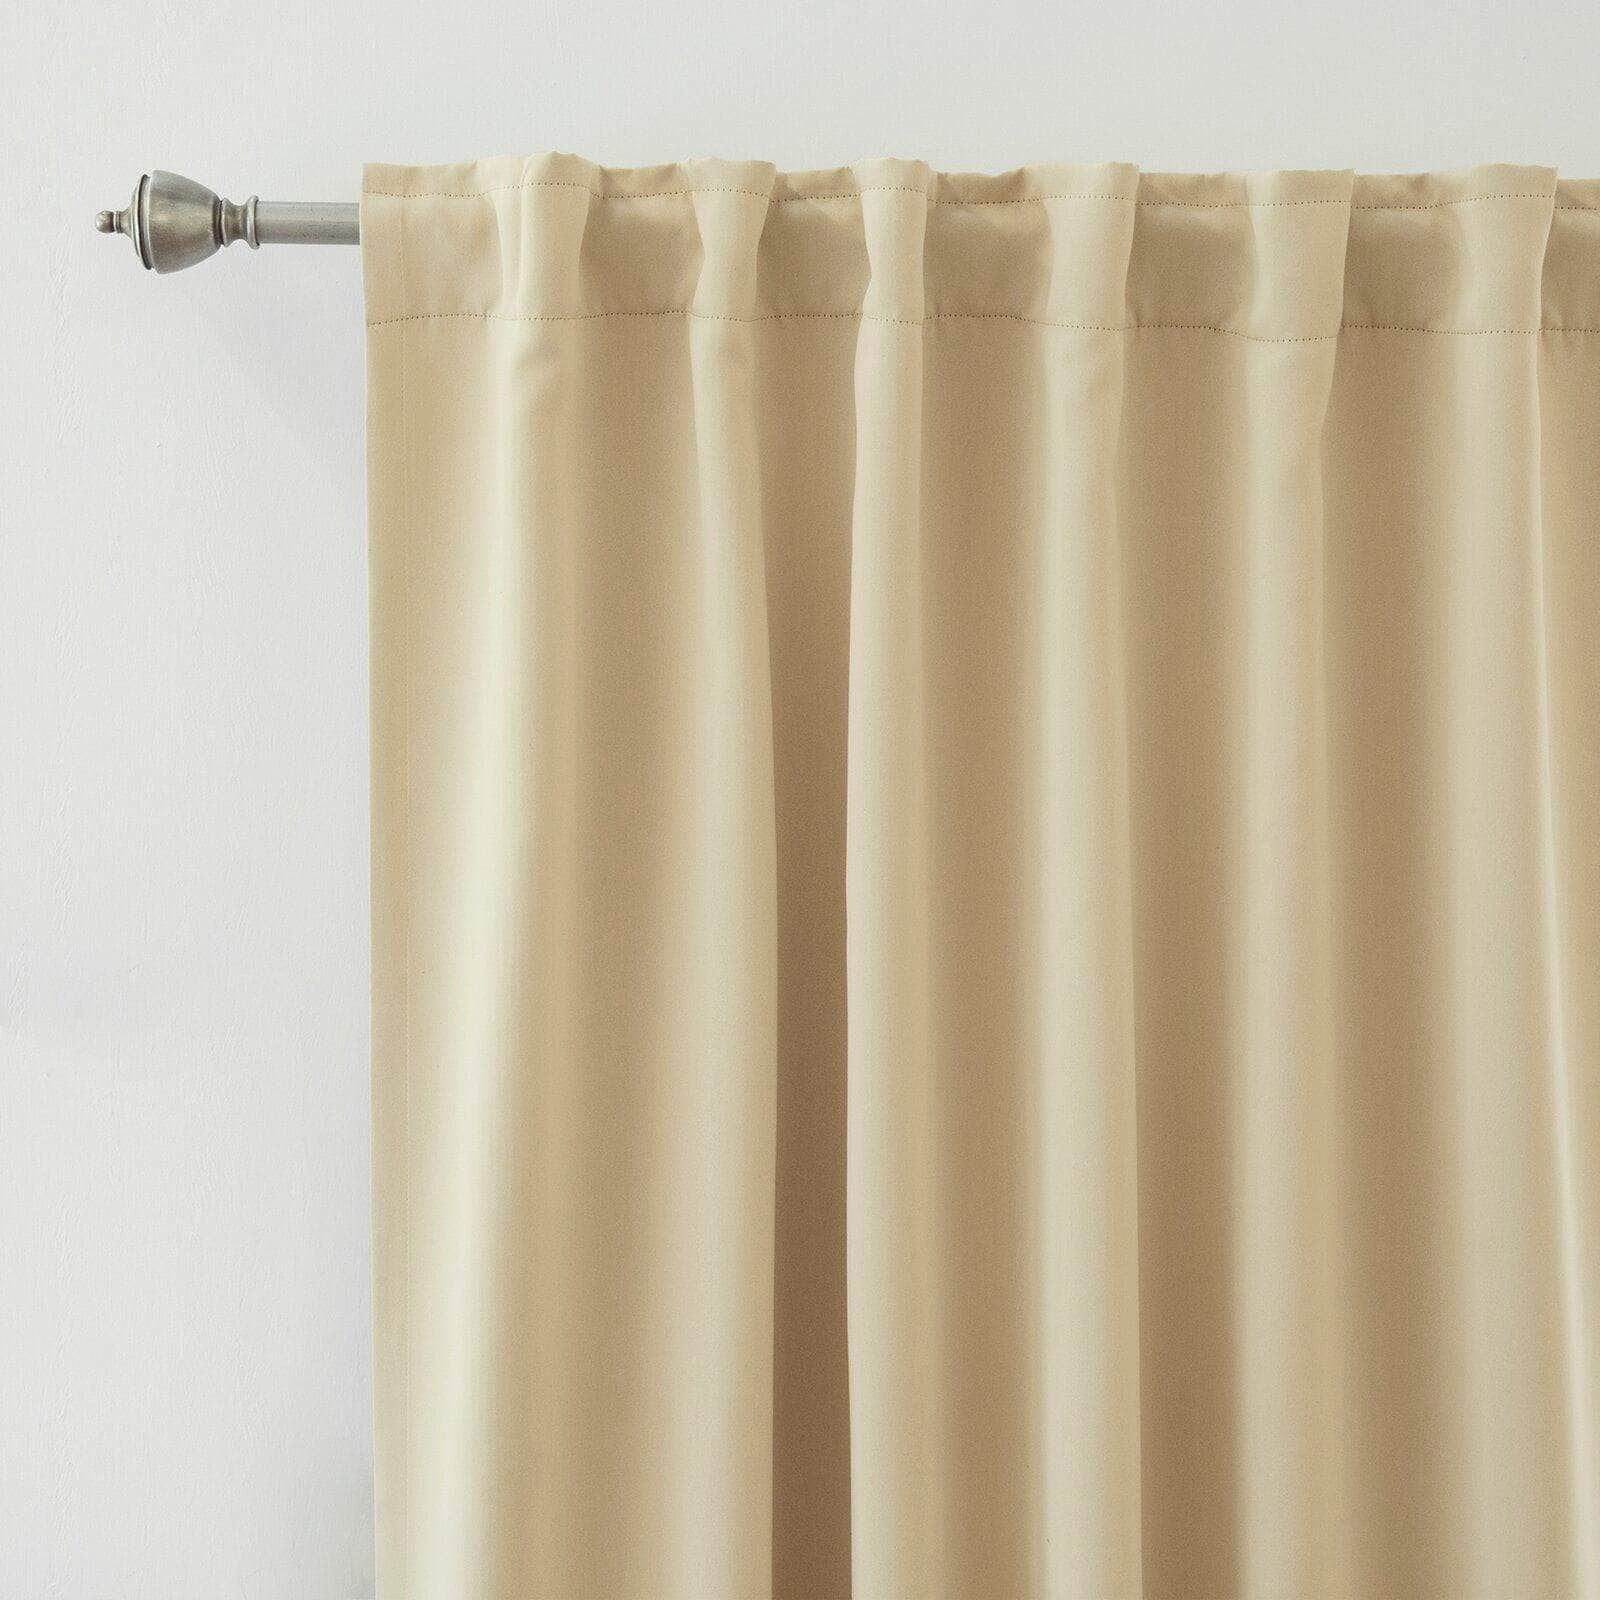 Penguin Group Curtains 250 H × 140 W (cm) Beige Velvet RikTig curtain